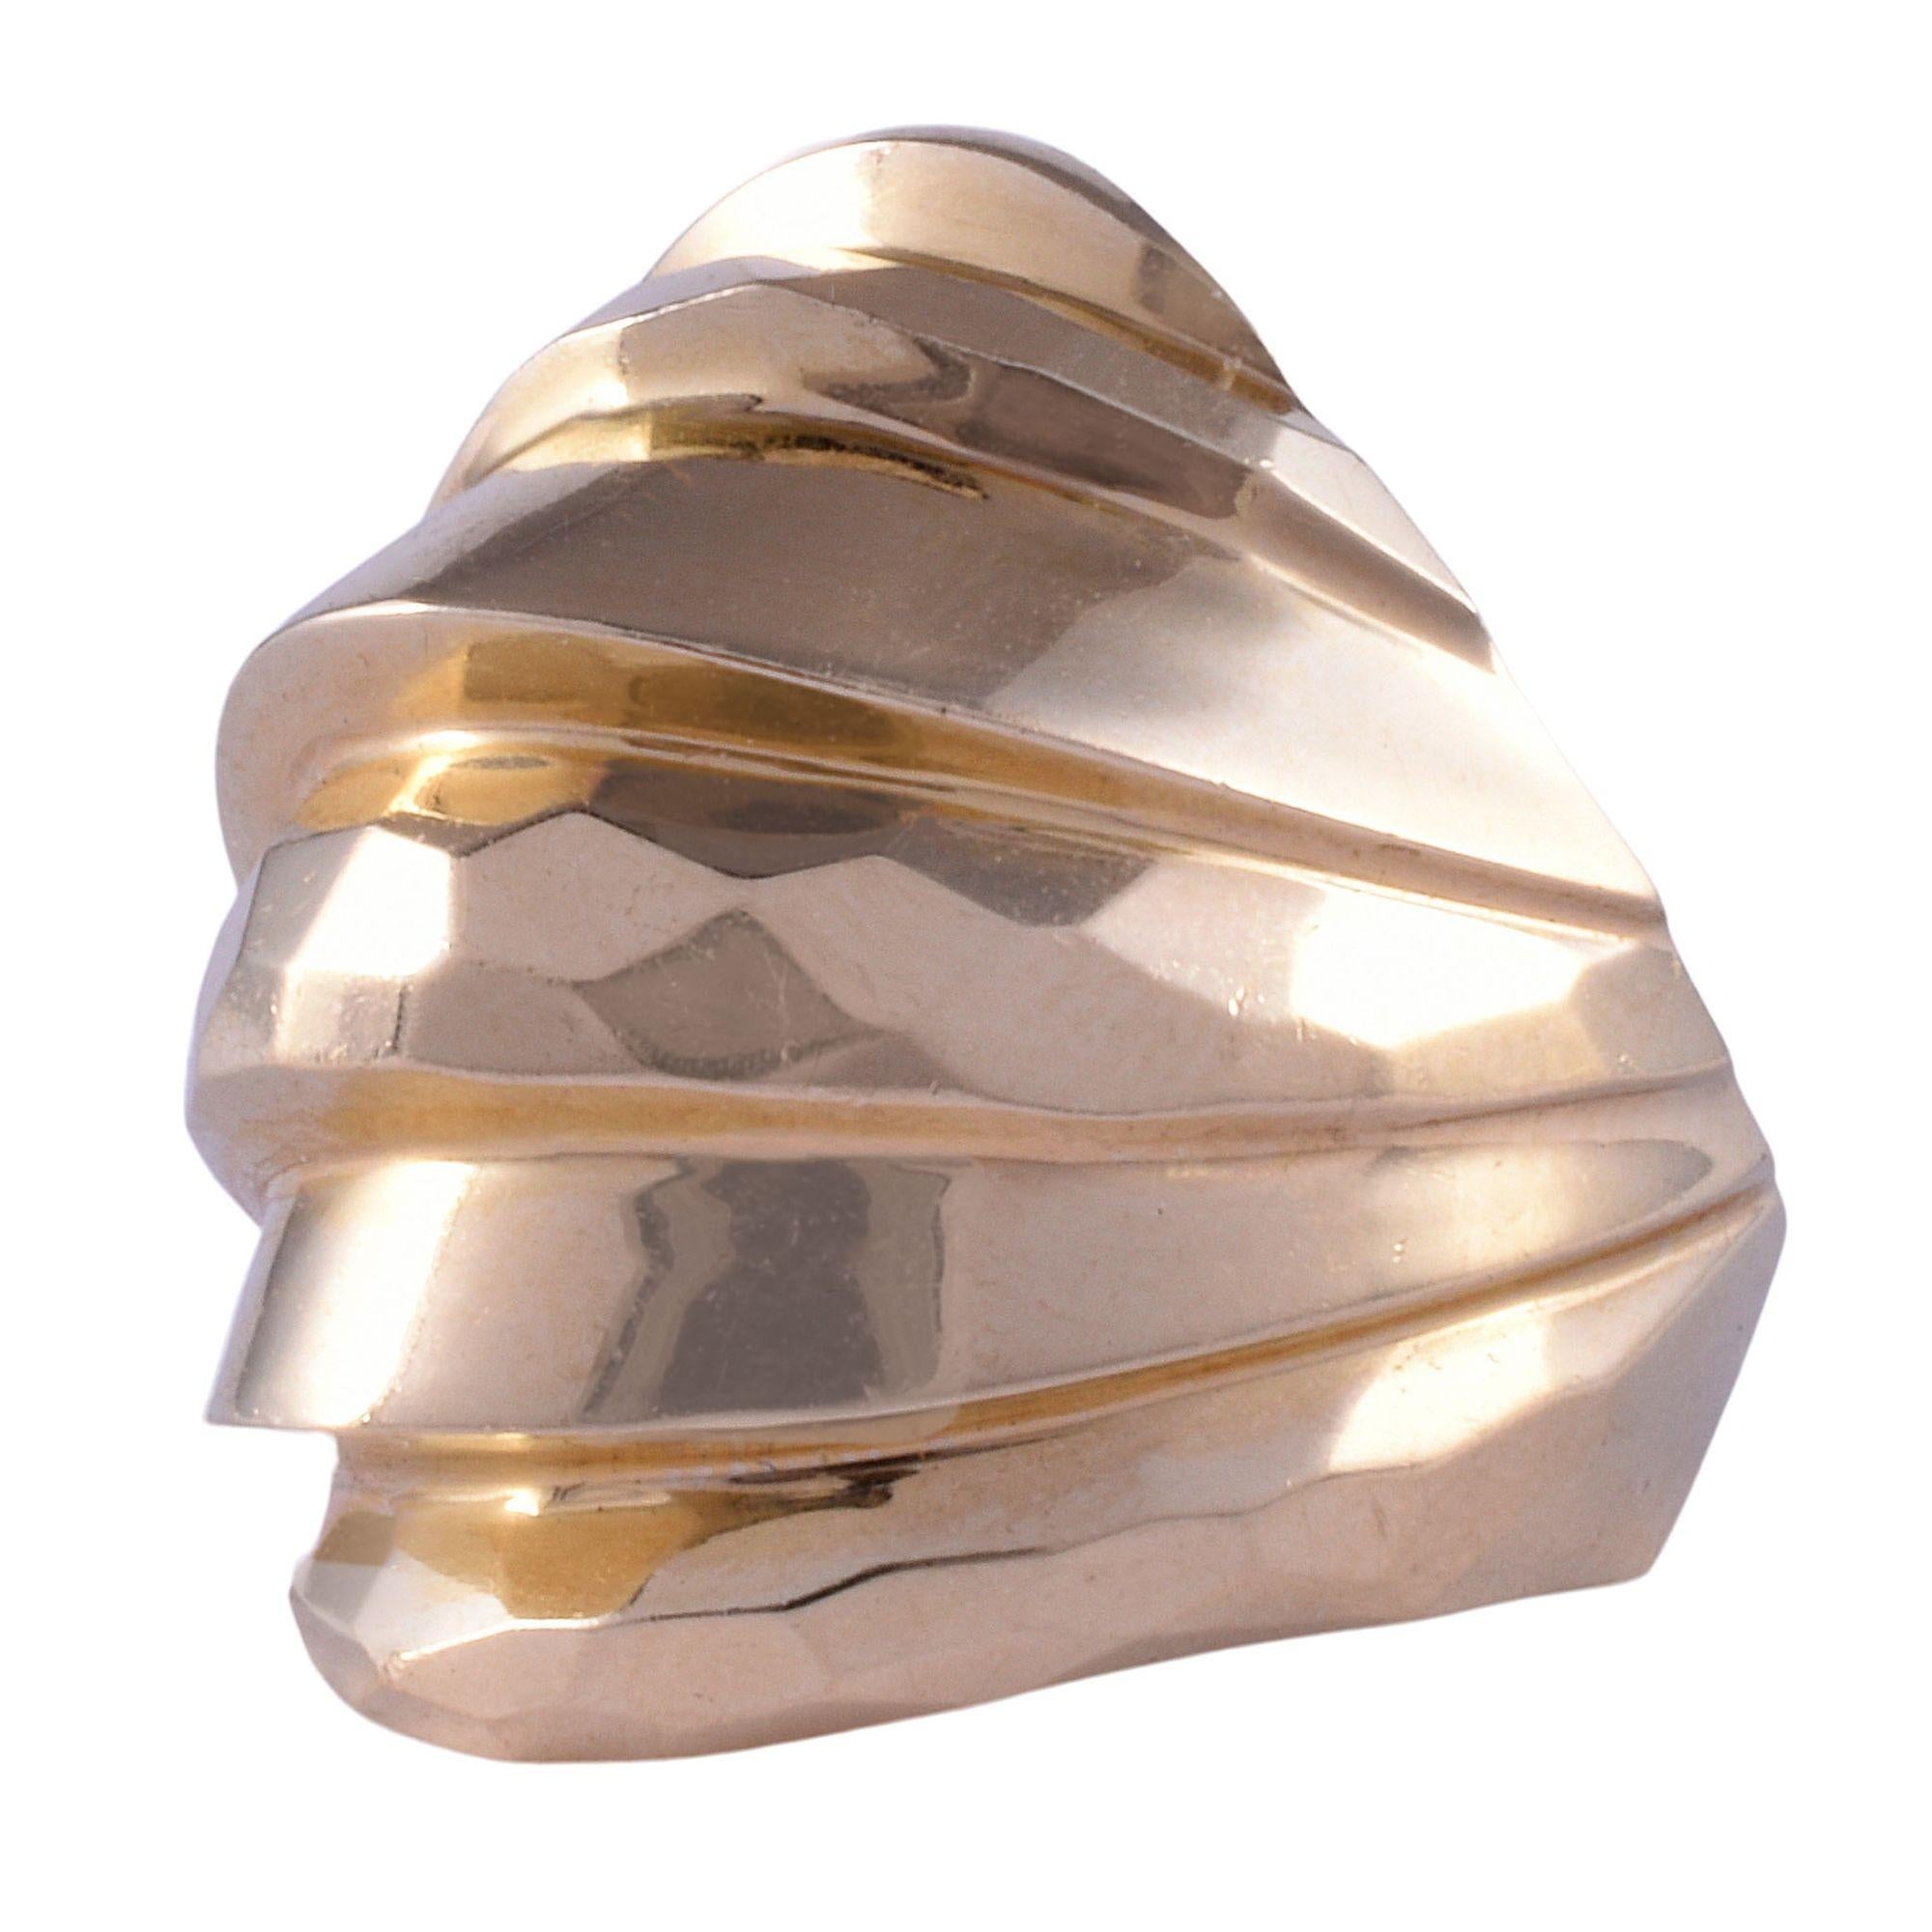 Vintage 14K Gold gehämmert Kuppel Ring, ca. 1970. Dieser große, kuppelförmige Ring ist aus 14-karätigem Gelbgold gefertigt und verfügt über eine gehämmerte Oberfläche. Der goldene Kuppelring im Vintage-Stil hat die Größe 7,25+. [KIMH 614]